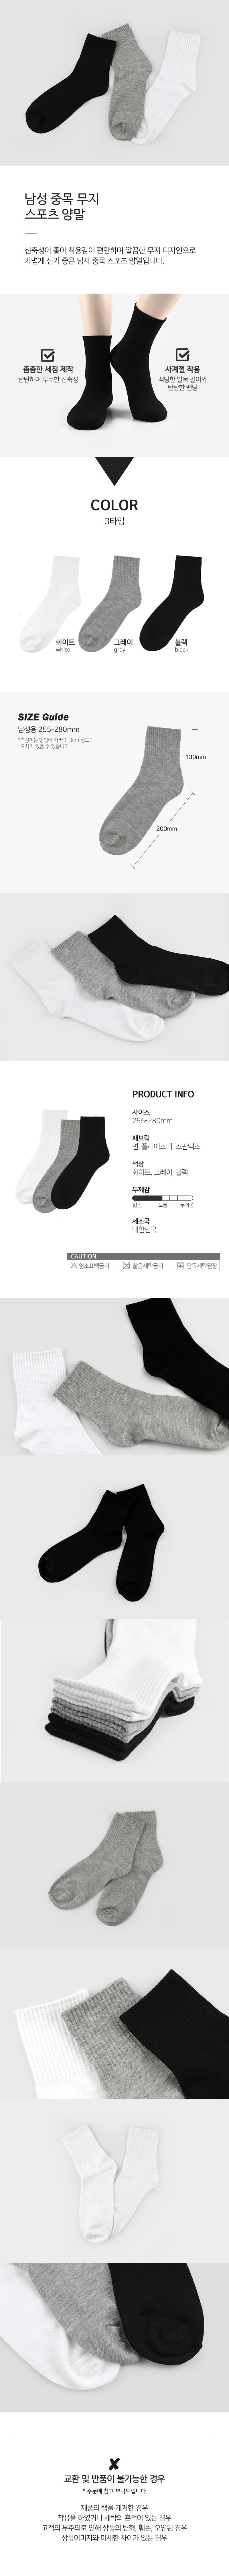 socks_00104.jpg